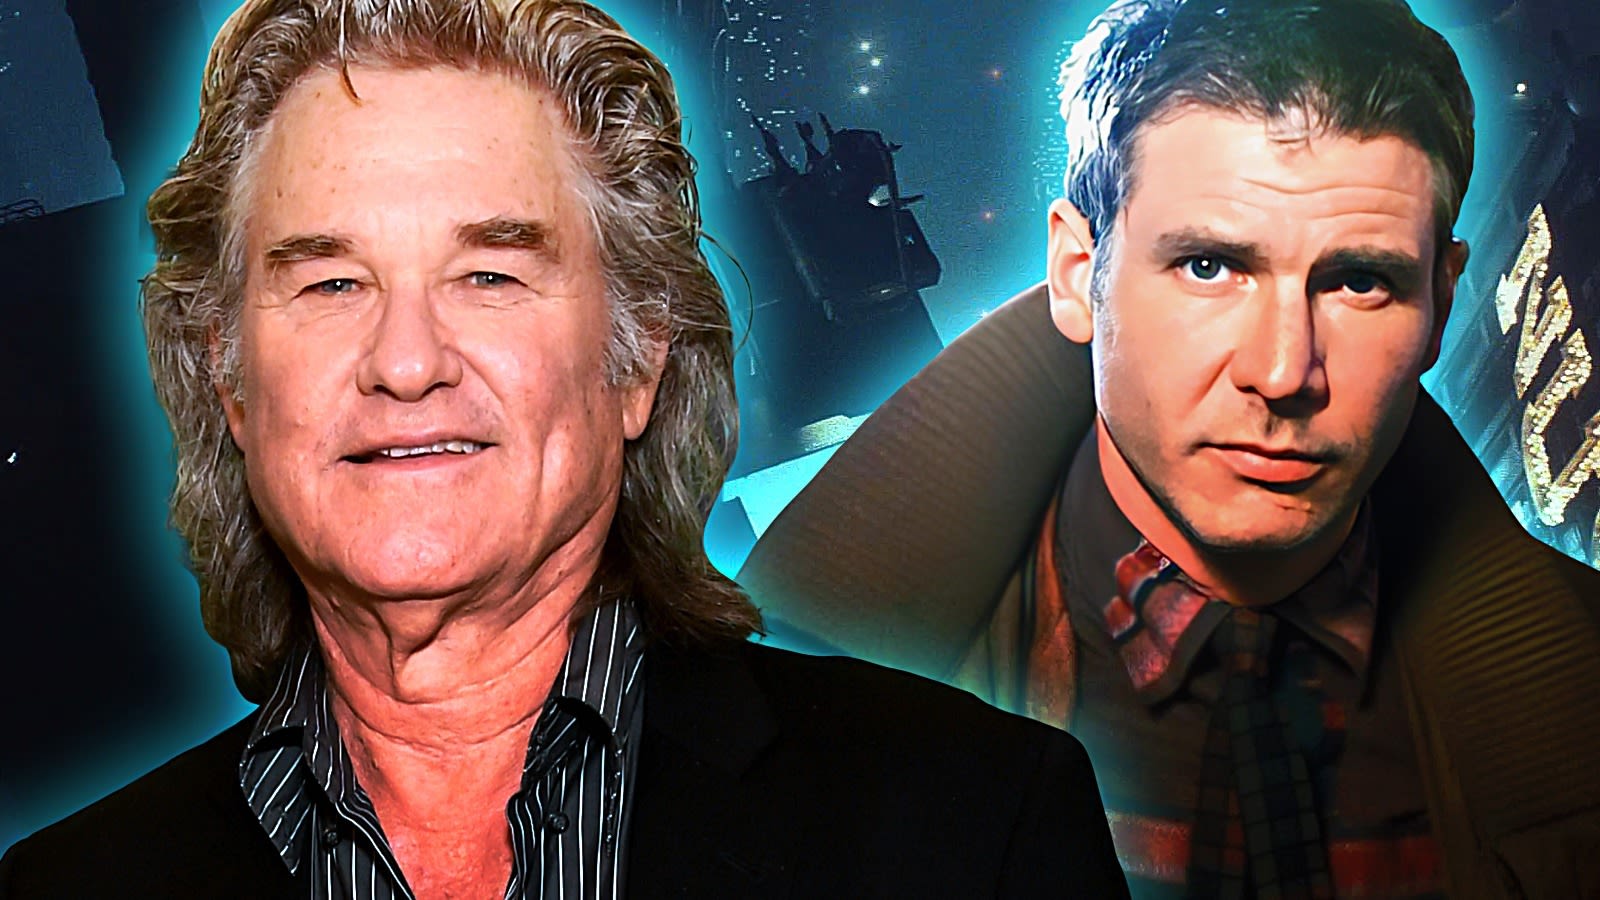 Blade Runner Has An Unofficial 'Sequel' With Kurt Russell - But Most Fans Never Heard Of It